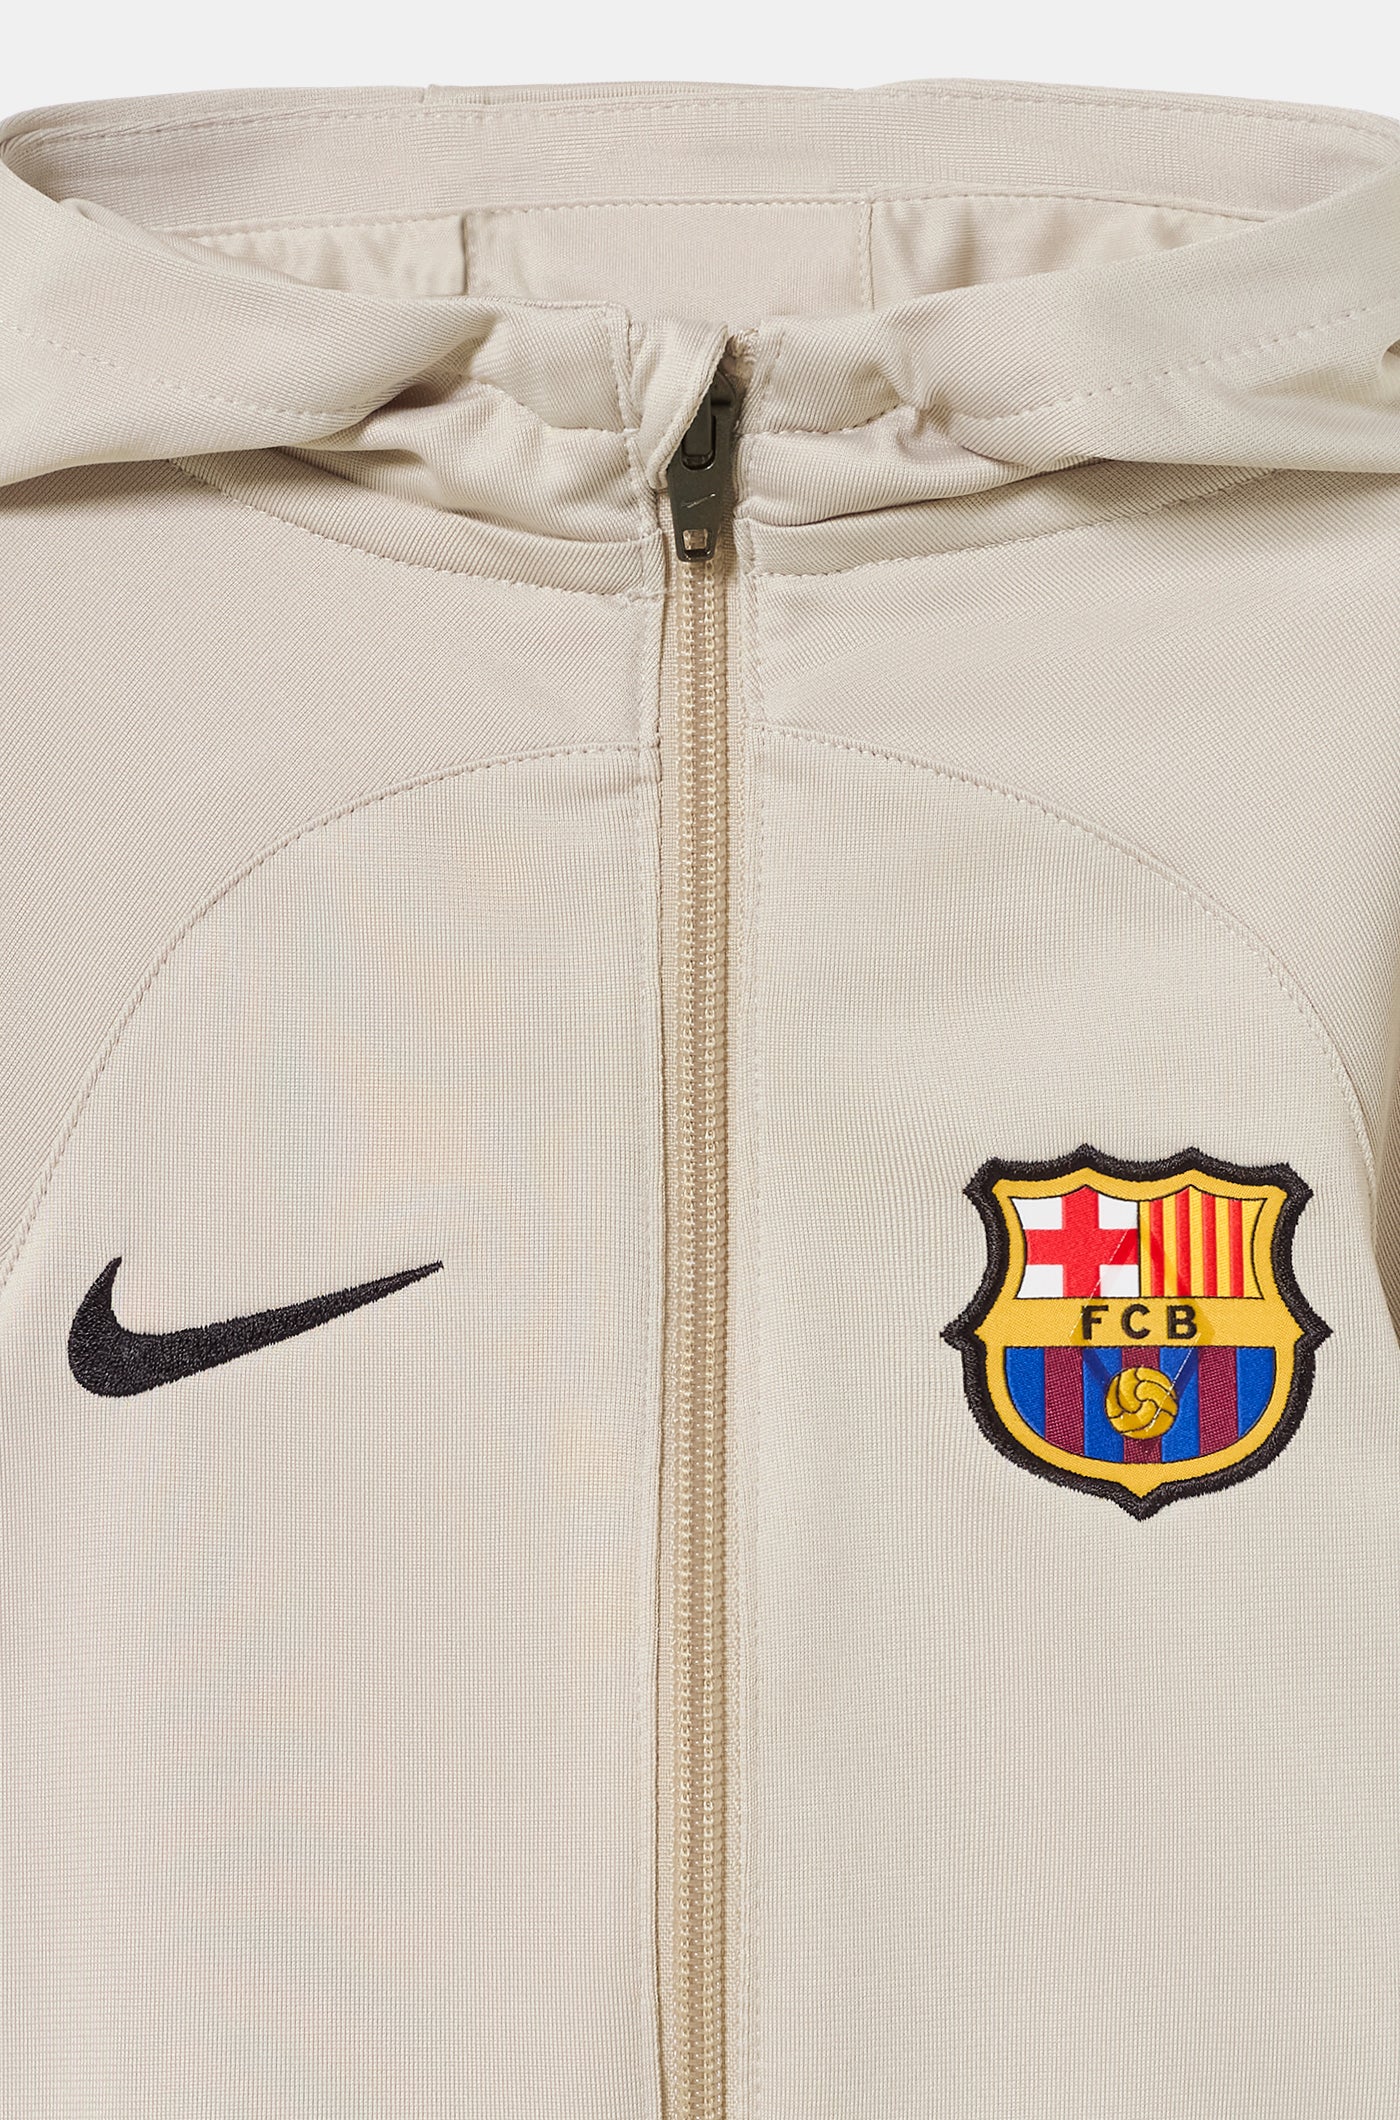 Chándal FC Barcelona – Barça Official Store Spotify Camp Nou